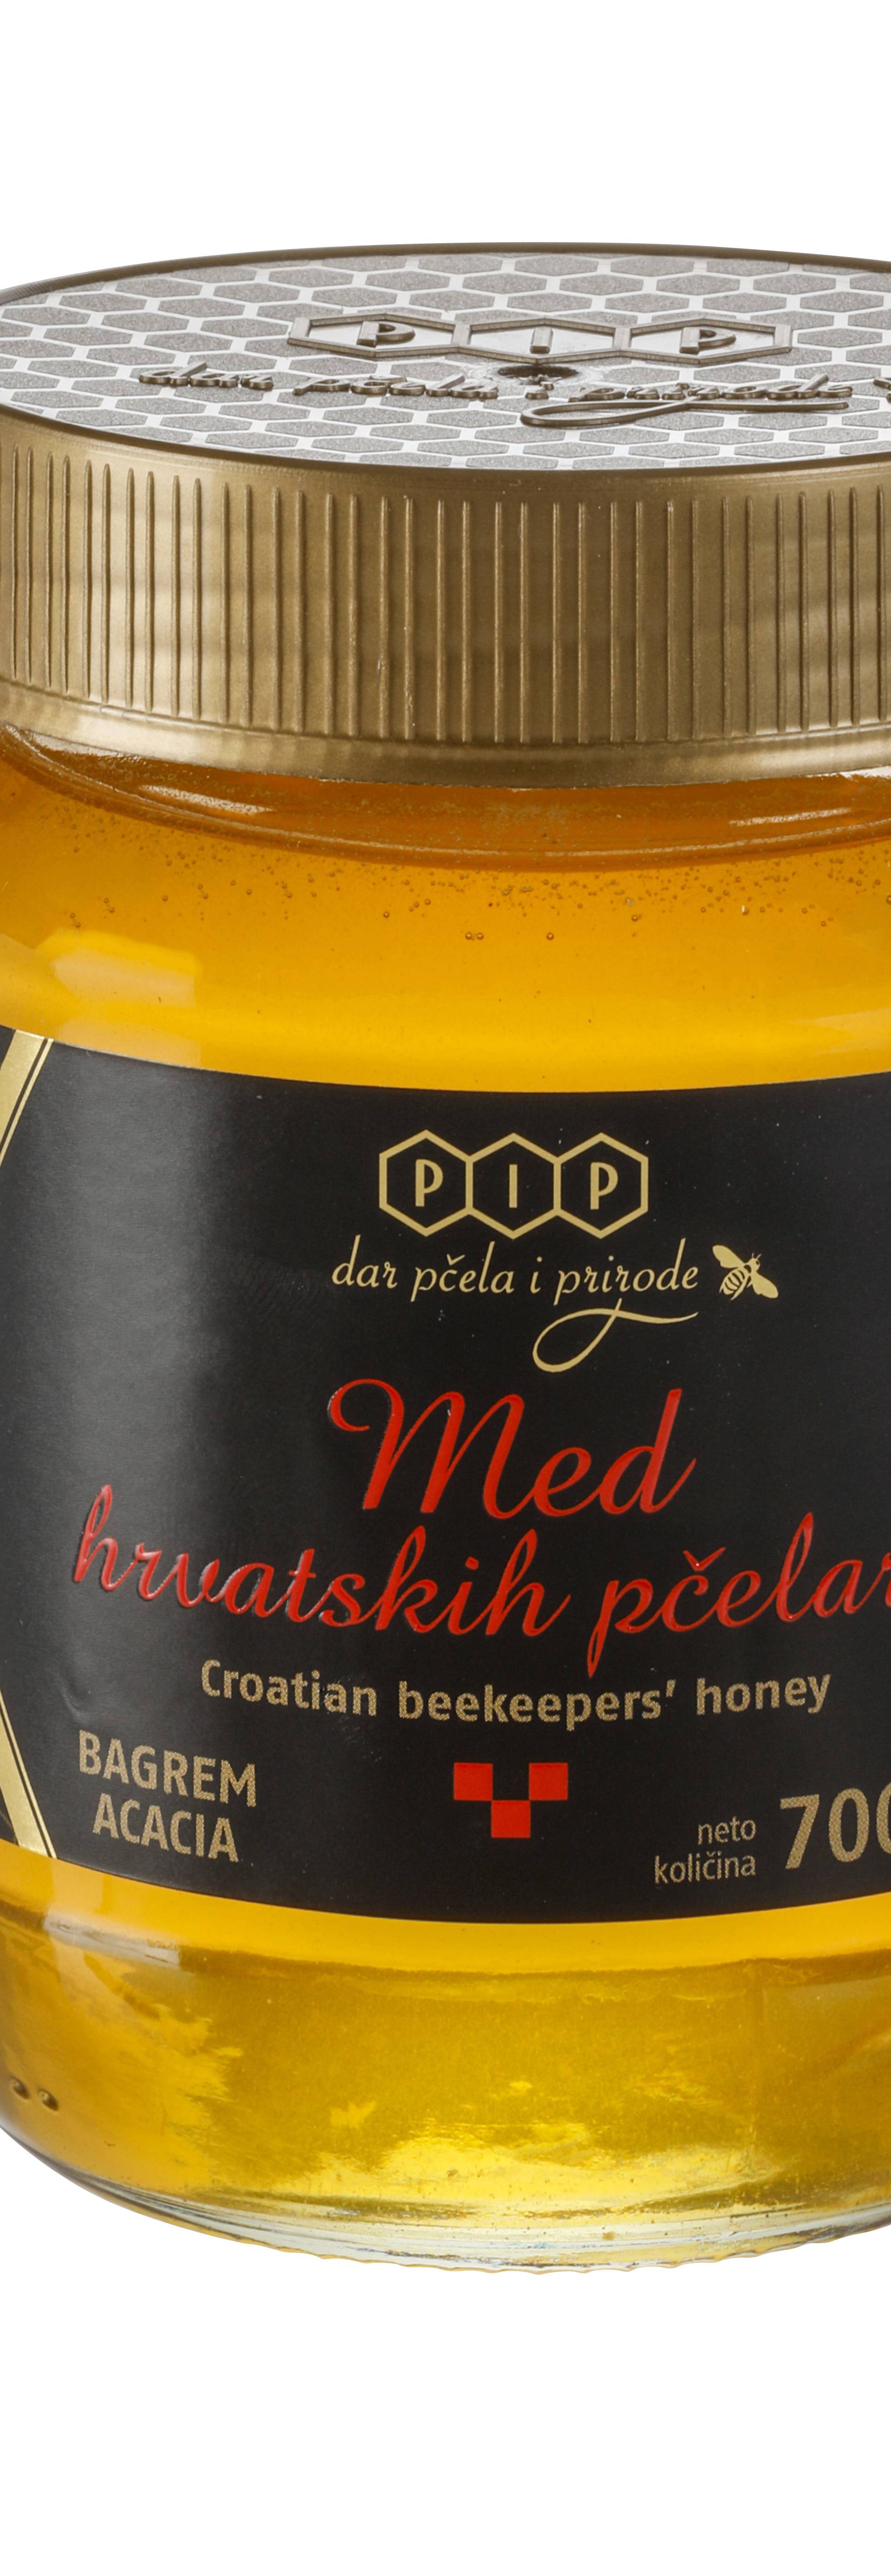 Slatki okus ljubavi iz hrvatskih košnica, med hrvatskih pčelara